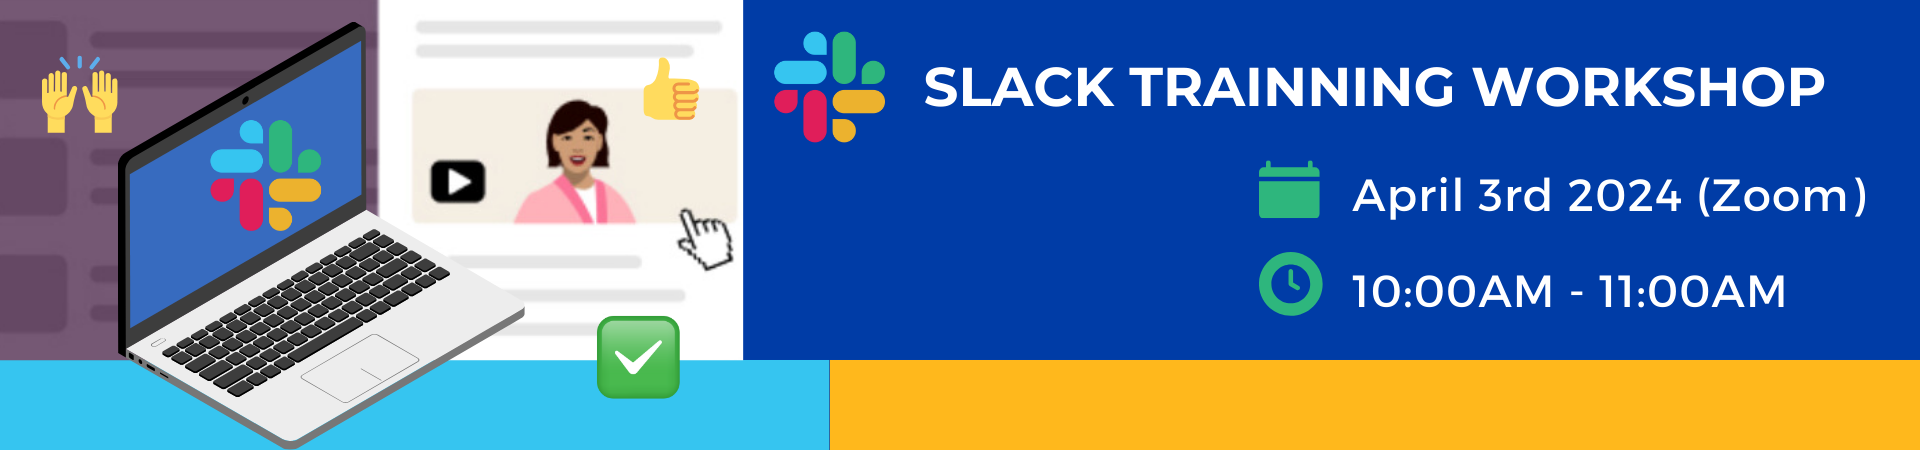  slack workshop graphic